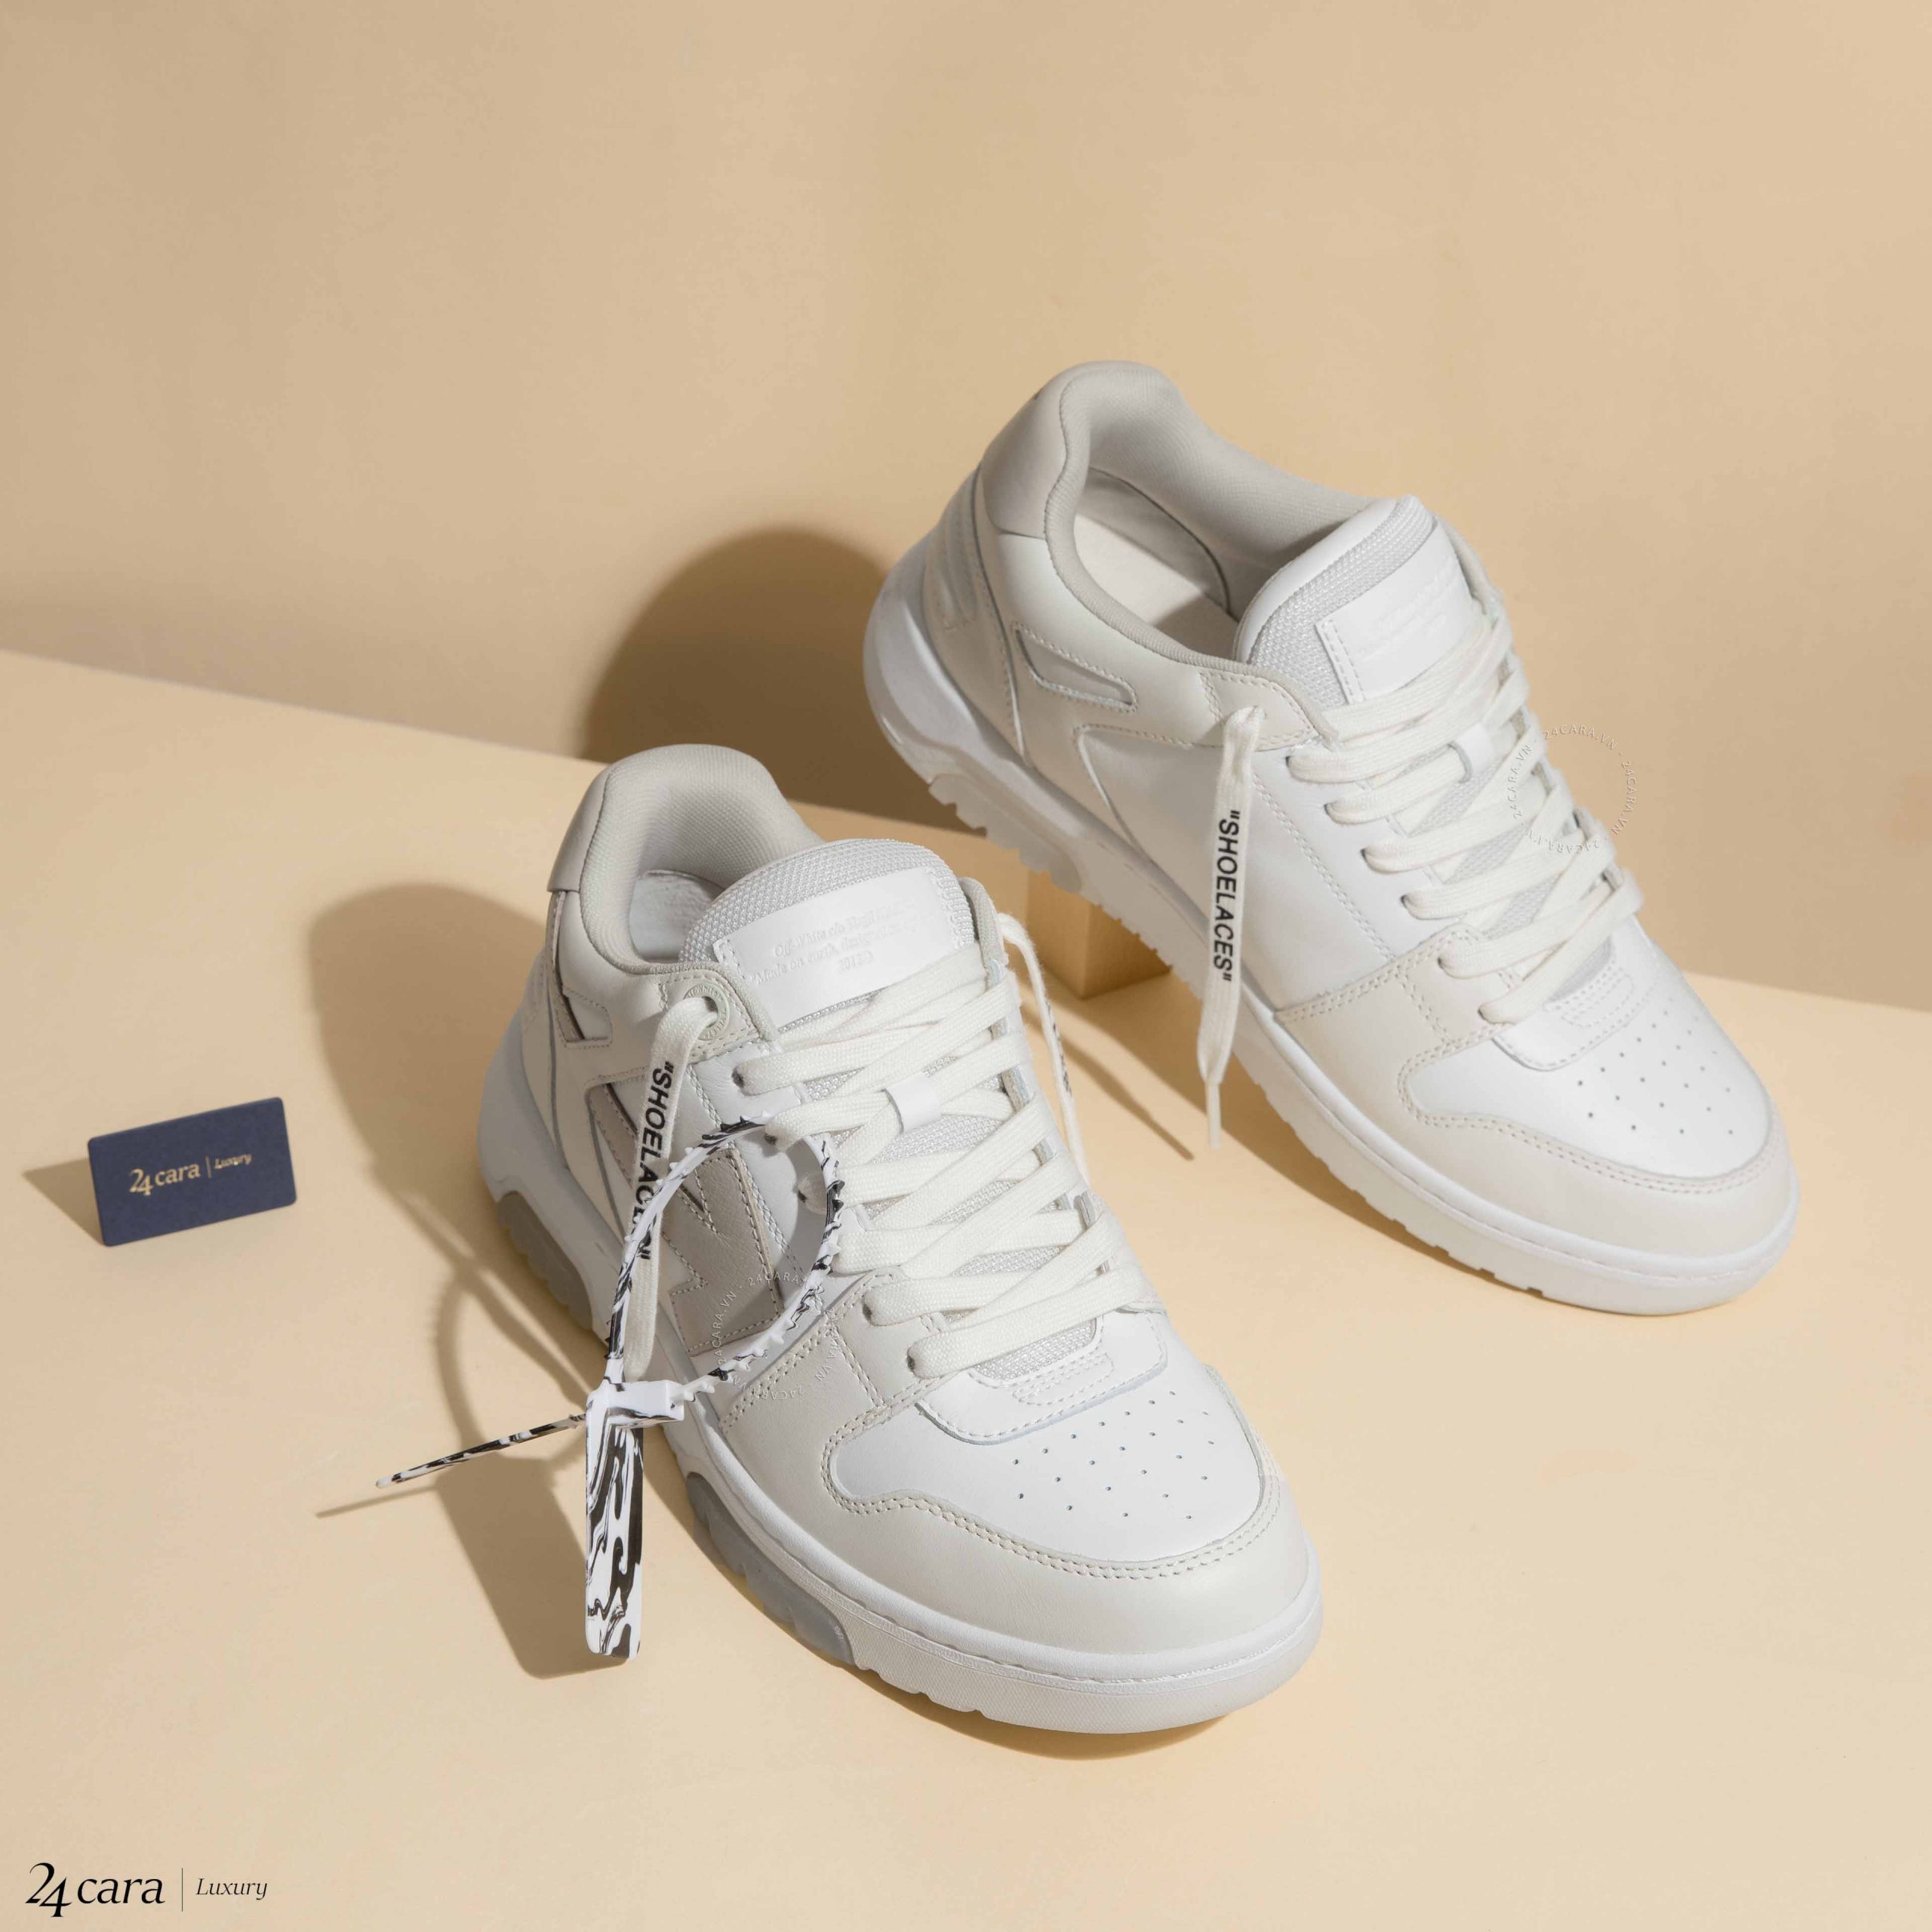 Out of Office Sneaker sẽ khiến bạn trông thật năng động và đầy cá tính. Hãy xem hình ảnh liên quan đến từ khoá này để cảm nhận được vẻ đẹp và sự tiện dụng khi sử dụng giày này. Thiết kế độc đáo và chất liệu chất lượng cao của giày sẽ khiến bạn luôn có một vẻ ngoài thời trang.